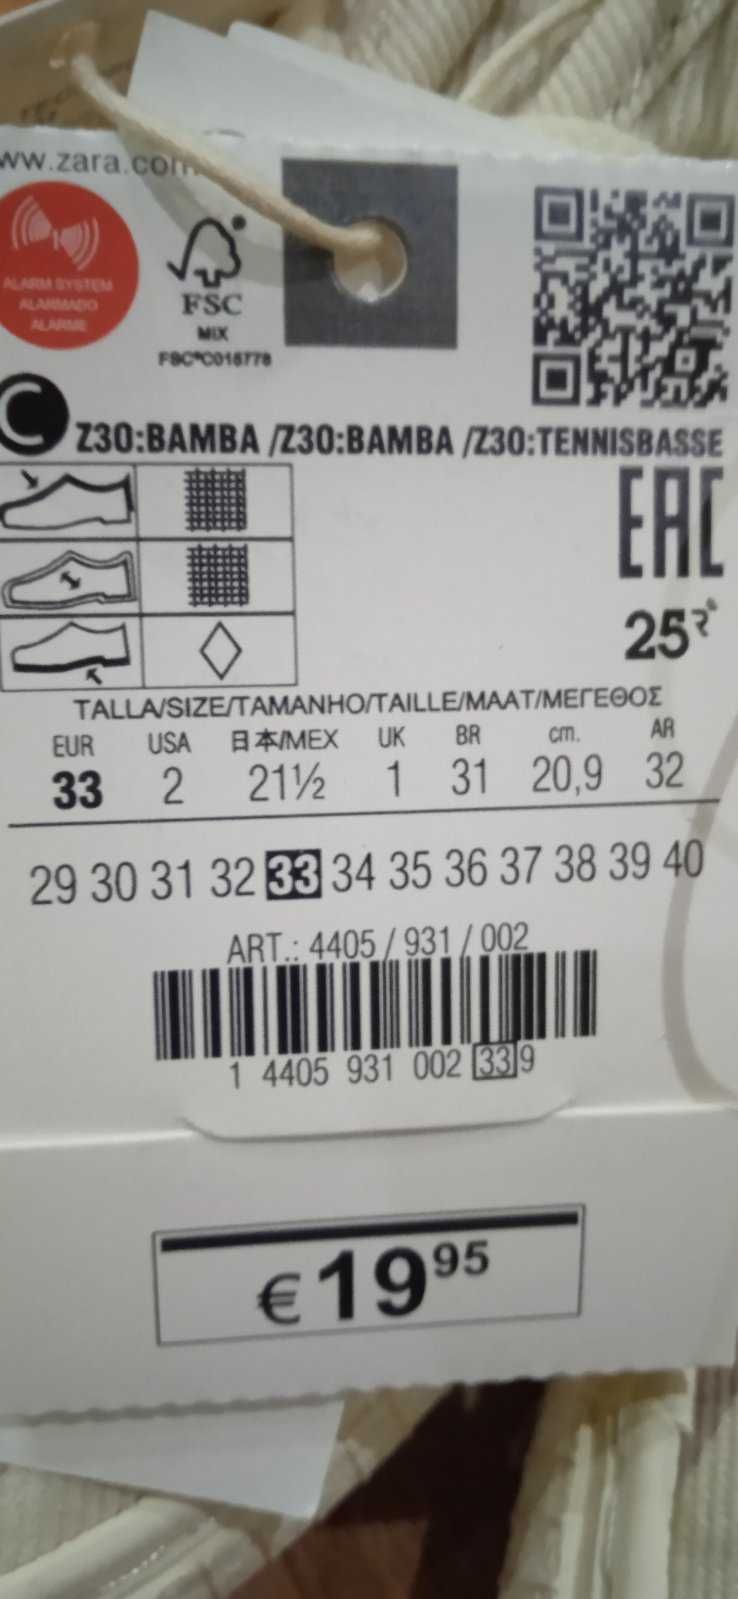 Детские хлопковые кроссовки ZARA 33 EUR